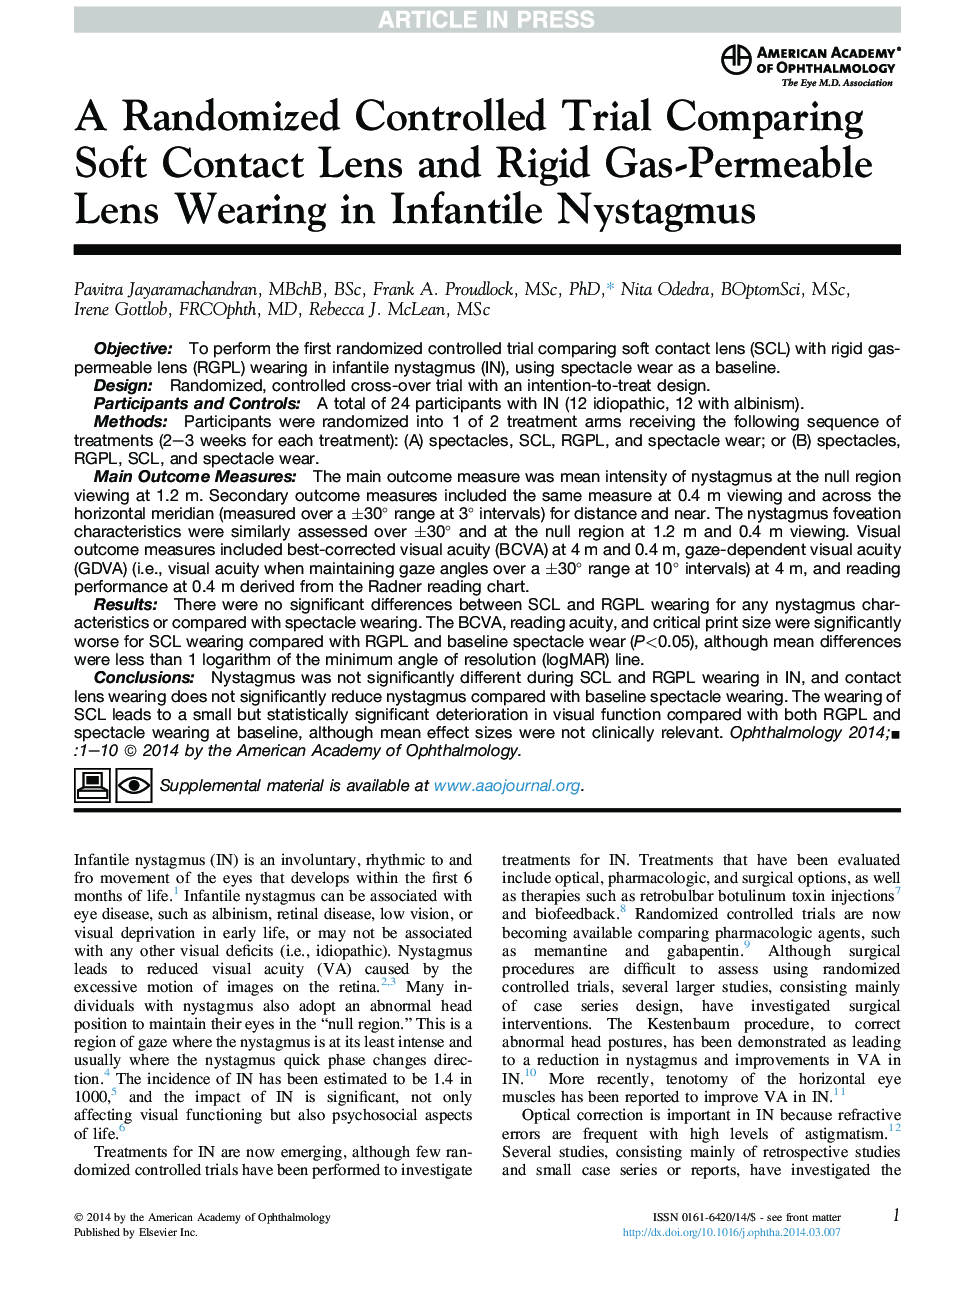 یک آزمایش تصادفی کنترل شده مقایسه لنزهای تماس نرم و لنز قابل نفوذ با گاز سفت و سخت در نیتسگموس نوزادان 